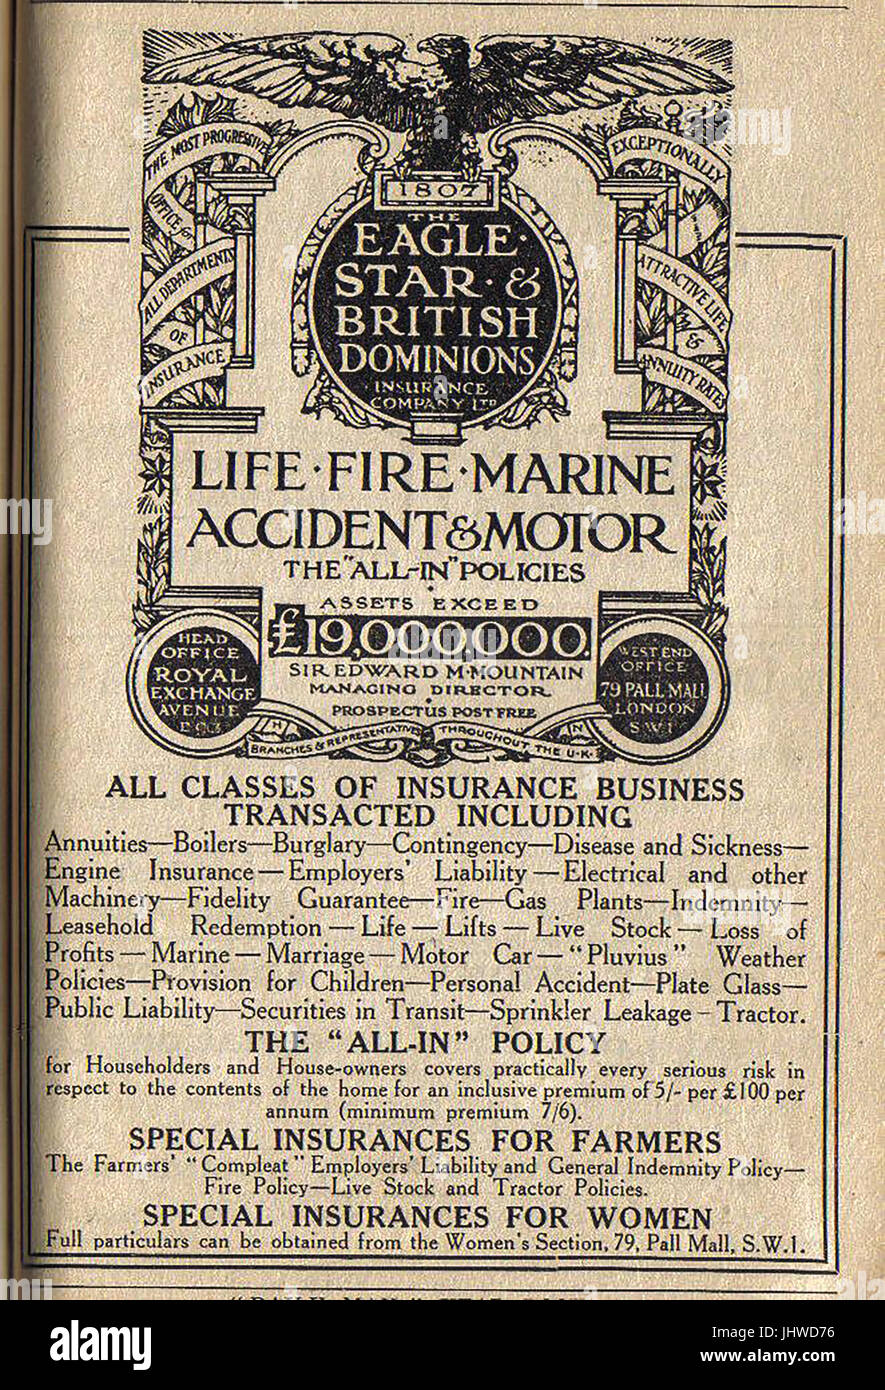 Eagle Star und britischen Dominions Versicherung Anzeige 1922 Stockfoto